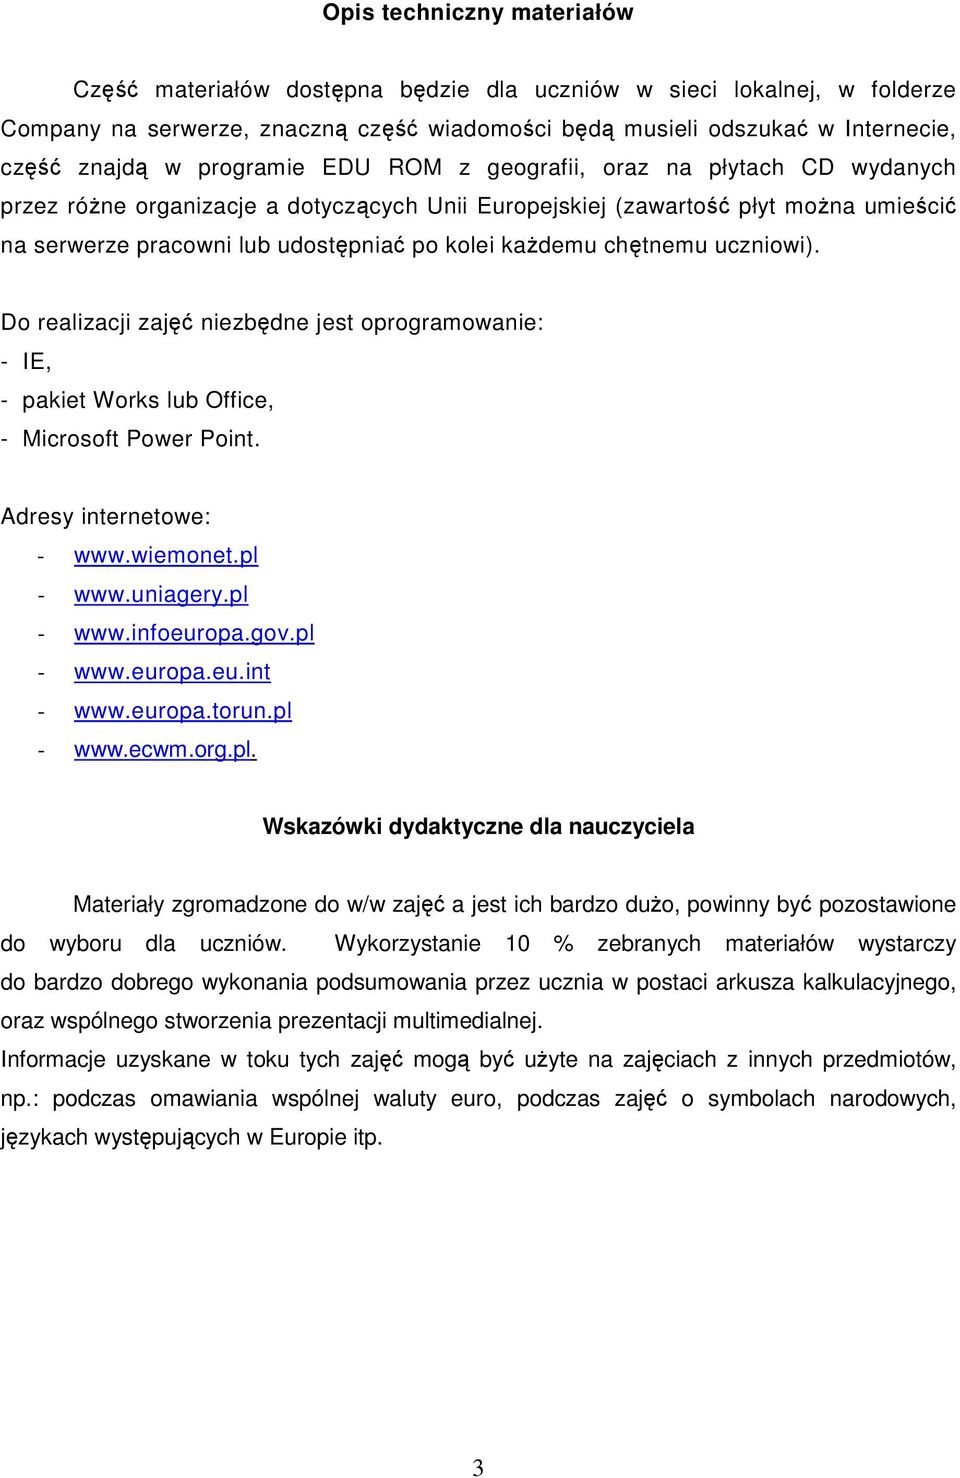 Do realizacji zaj niezbdne jest oprogramowanie: - IE, - pakiet Works lub Office, - Microsoft Power Point. Adresy internetowe: - www.wiemonet.pl - www.uniagery.pl - www.infoeuropa.gov.pl - www.europa.eu.int - www.